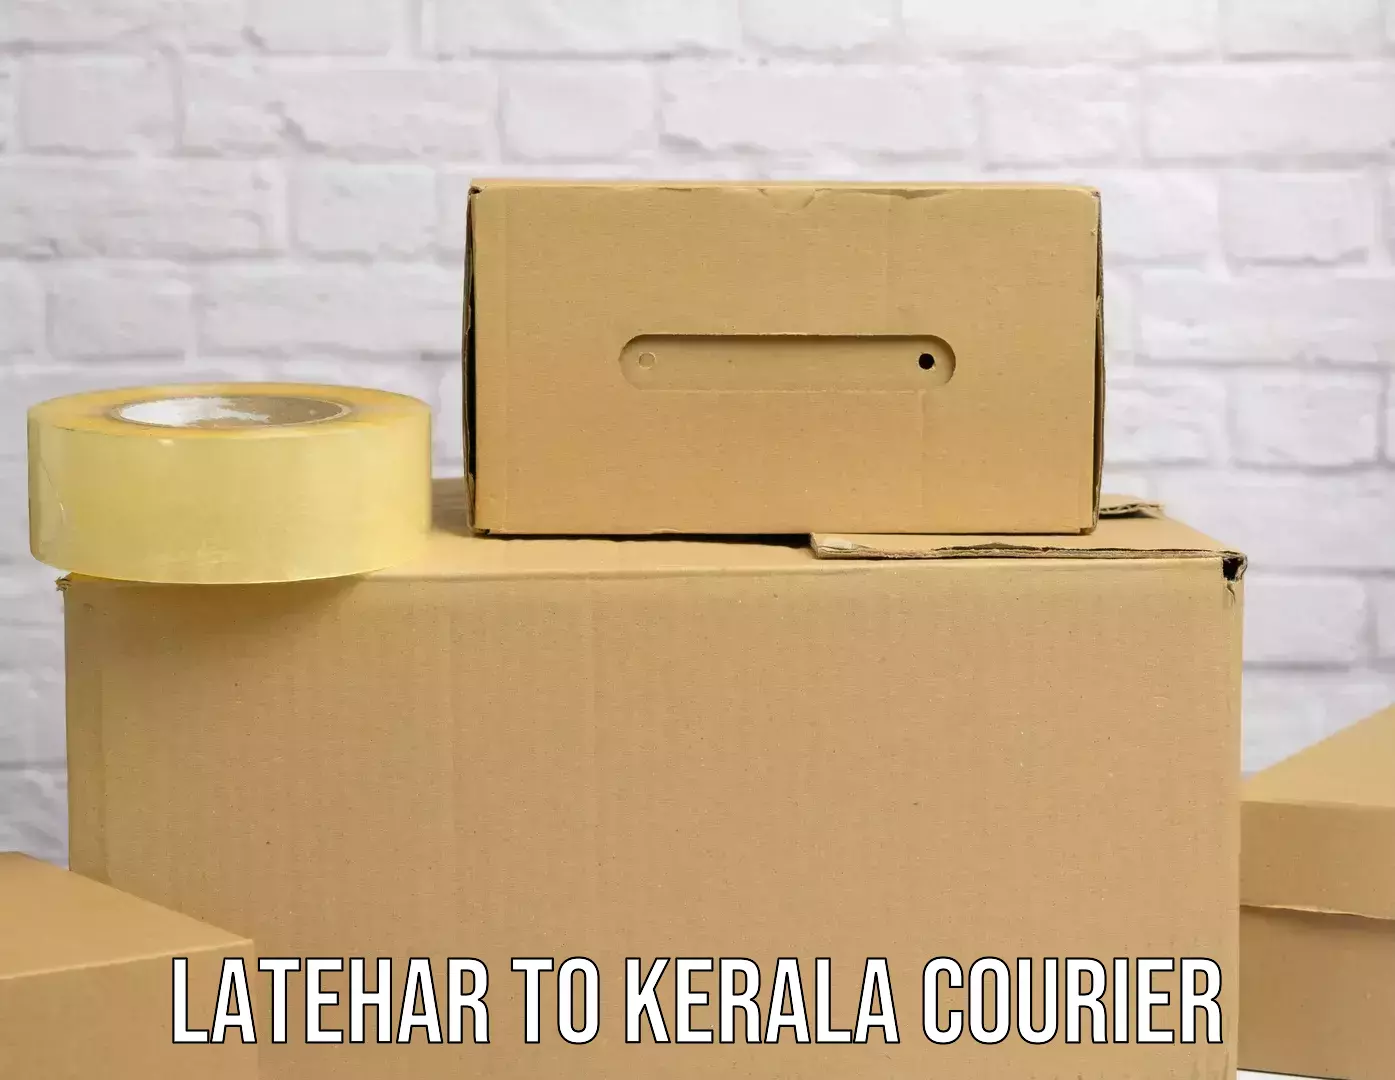 Affordable parcel service Latehar to Manjeri Kla